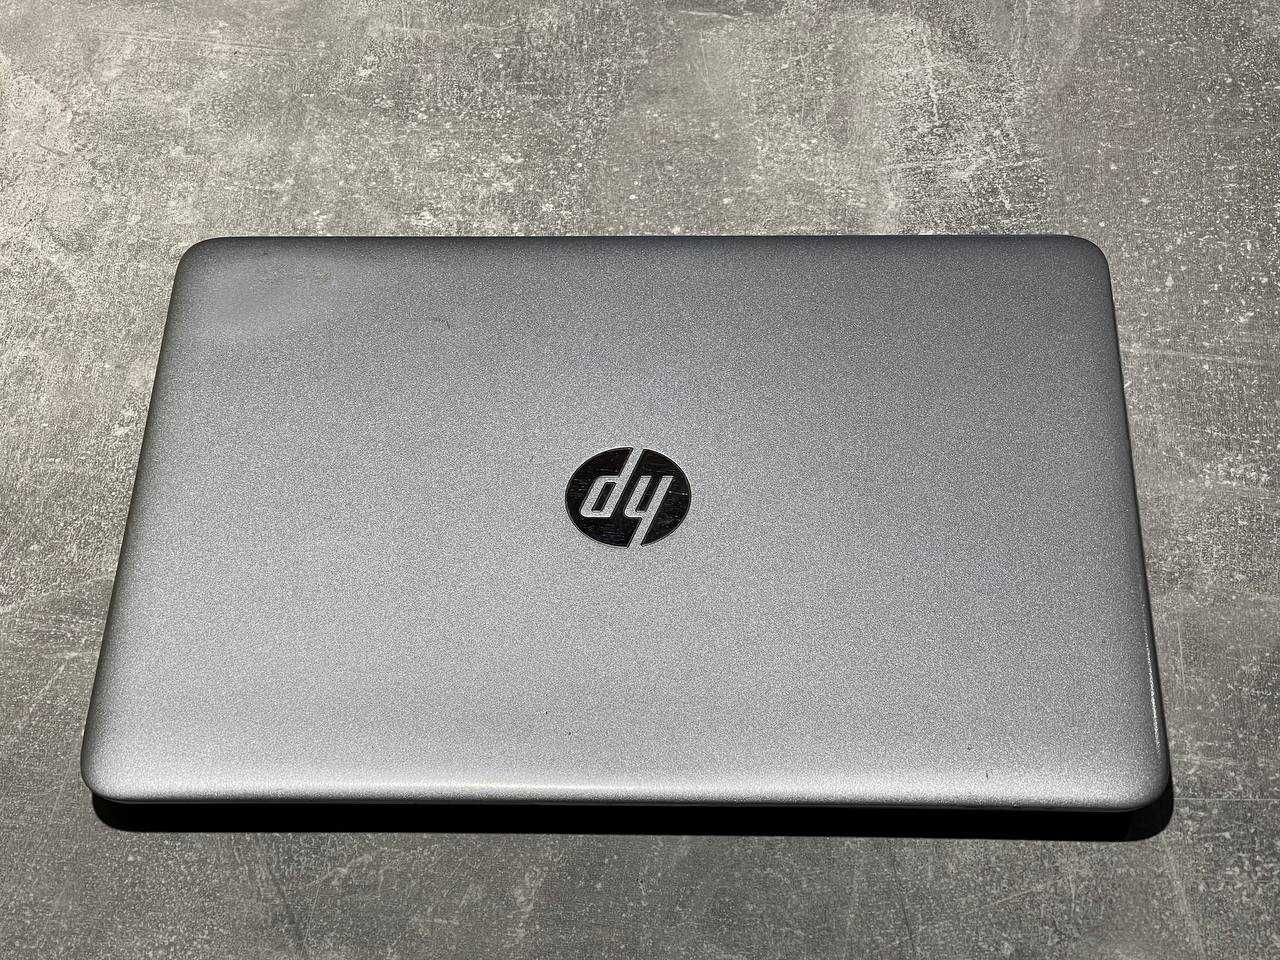 Ноутбук HP 840 G3 ∎i5-6200U∎DDR4-8GB∎SSD-240GB∎Вебкамера∎гарантия 1год